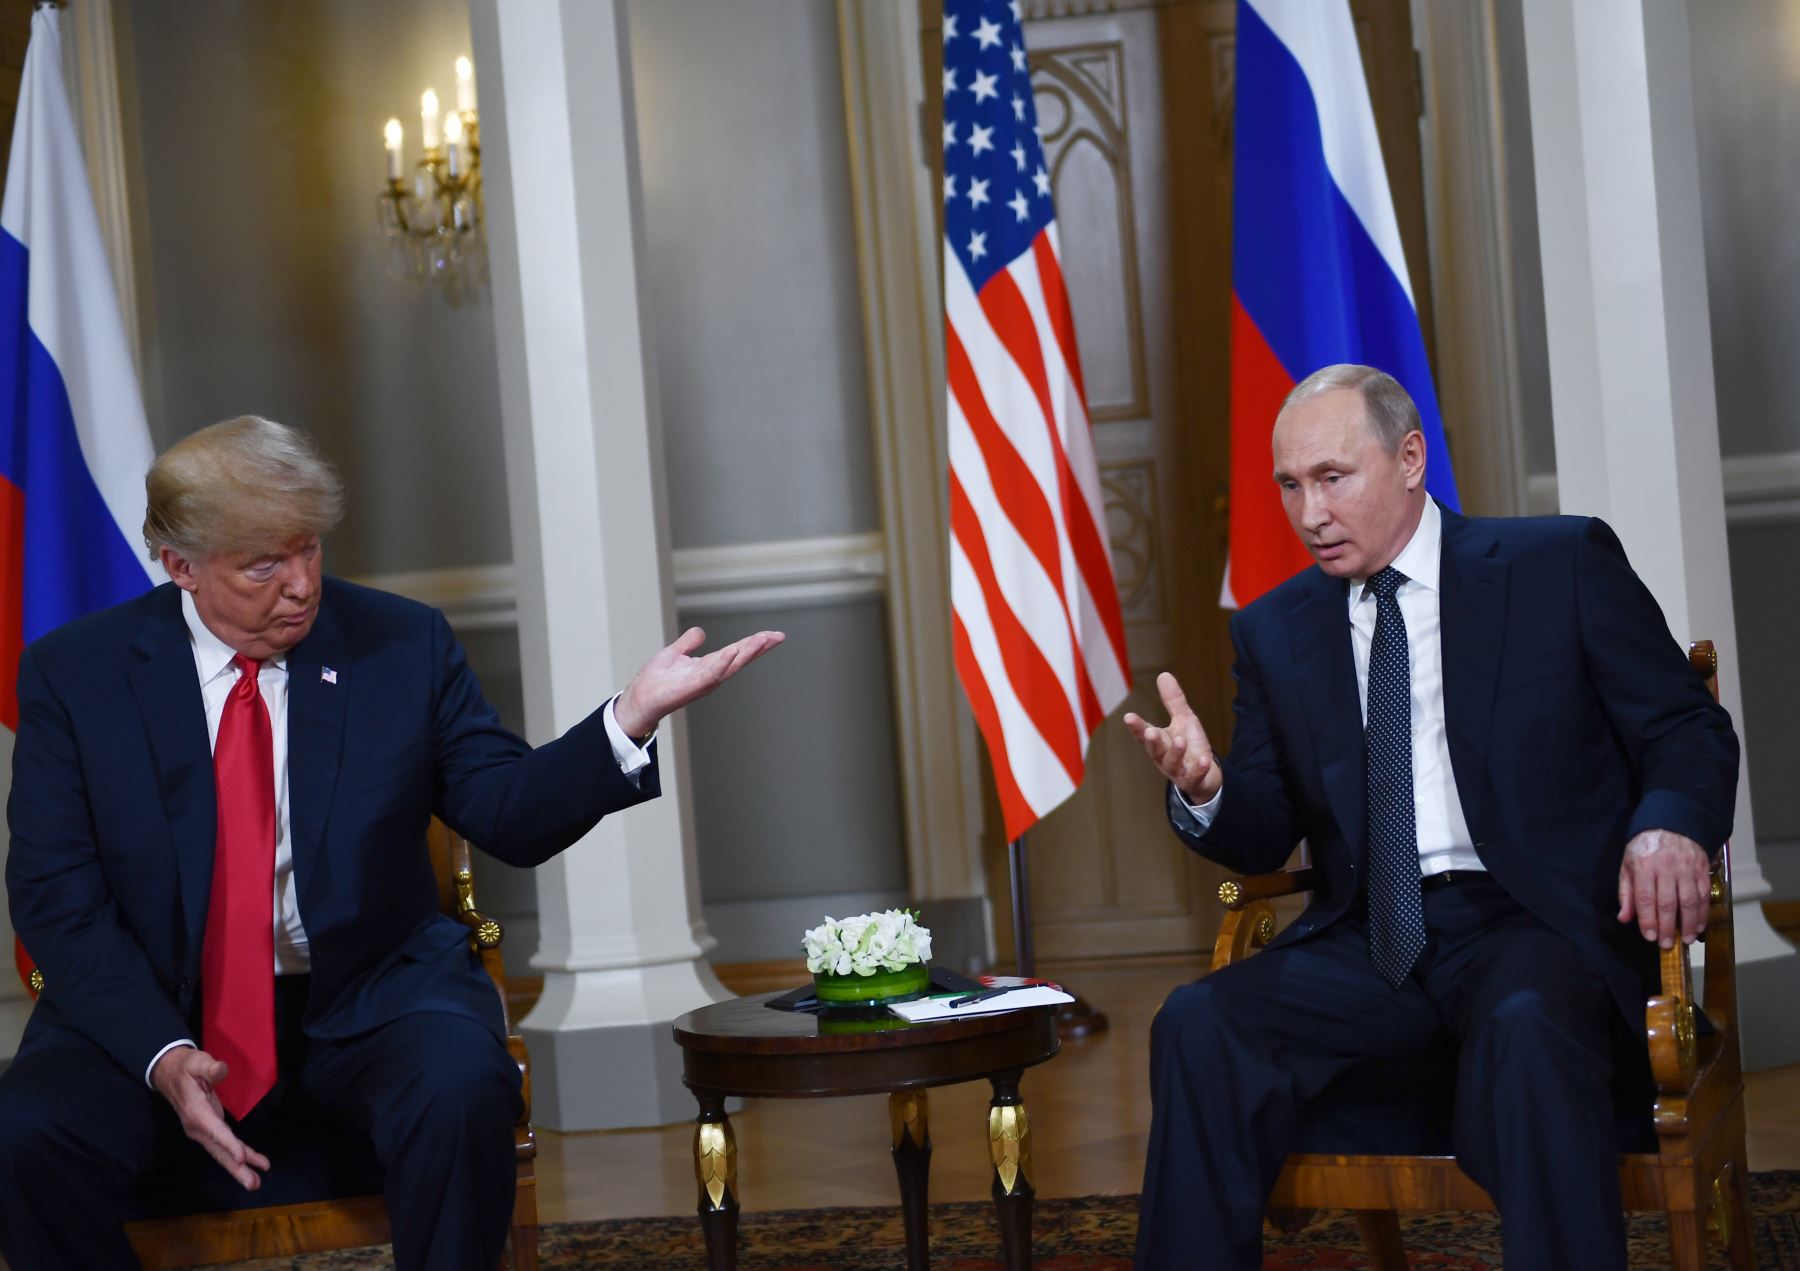 Los líderes de Estados Unidos y Rusia sostuvieron una histórica cumbre en Helsinki, con Donald Trump prometiendo una "relación extraordinaria" y Vladimir Putin diciendo que ya era hora de resolver las disputas en todo el mundo. Foto: AFP